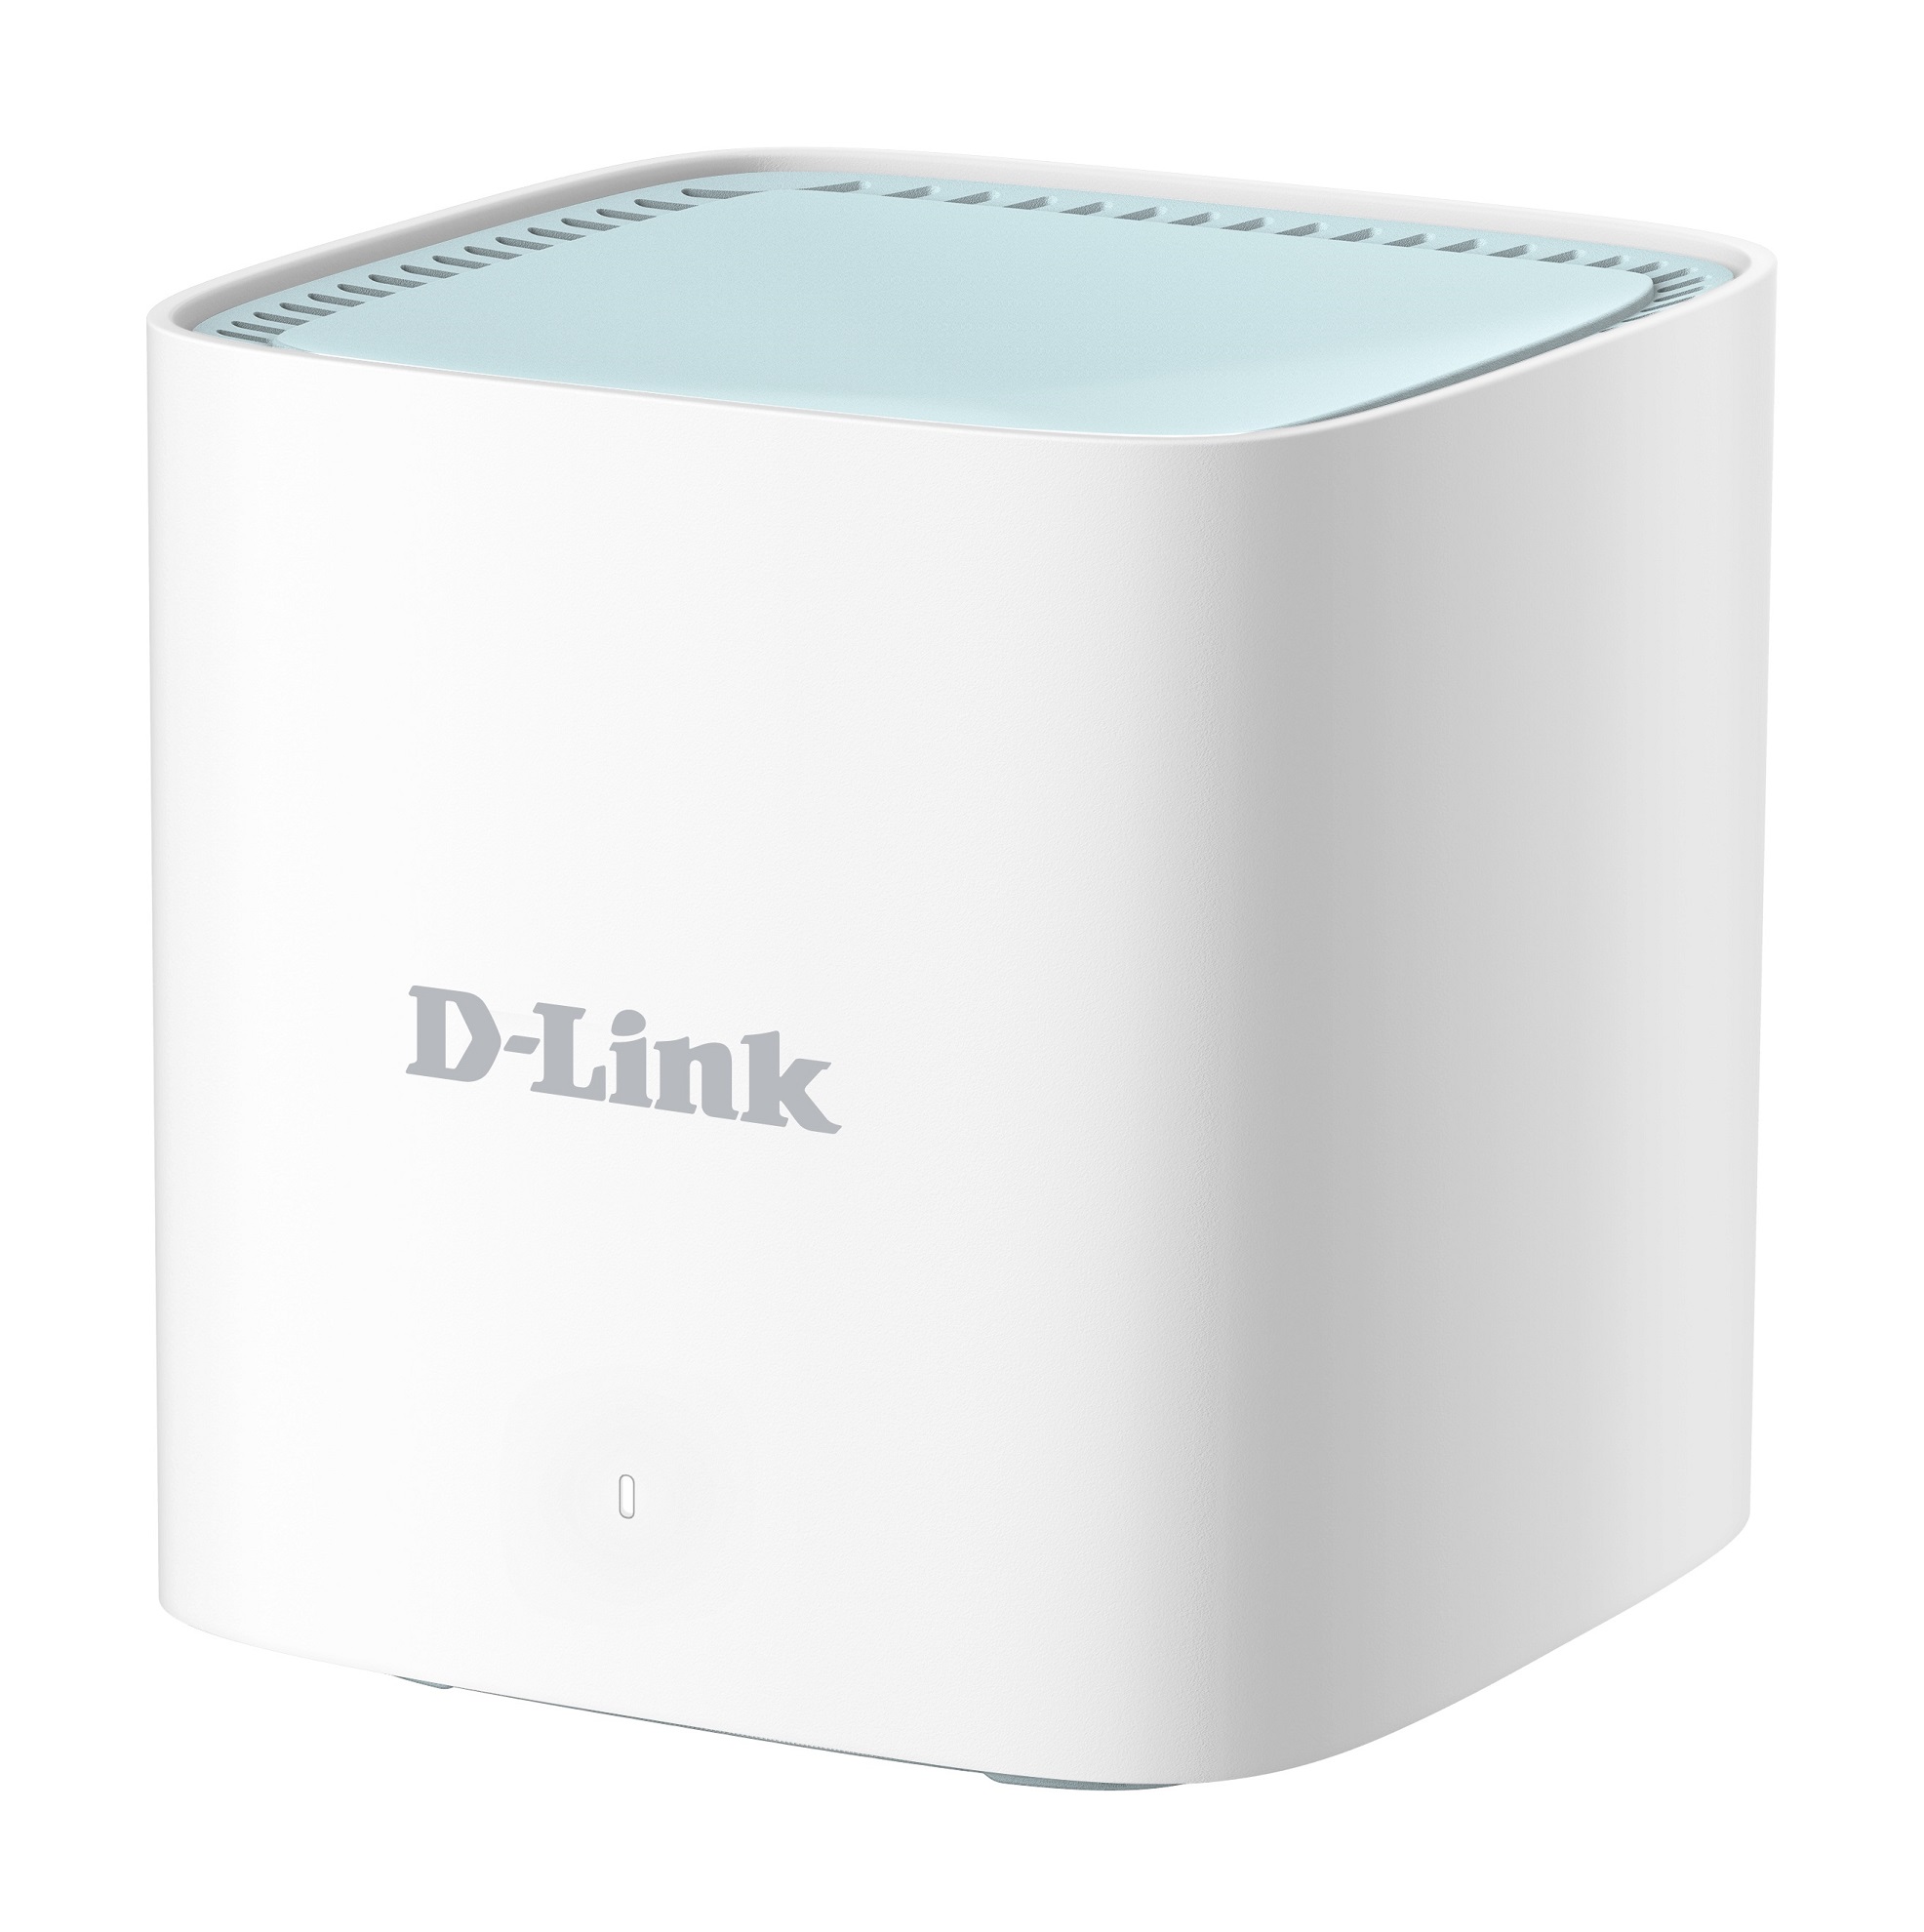 D-Link DWP-1010/ KT - 5G/ LTE Outdoor CPE (ODU Unit), 1x 1GbE port + M15 (IDU Unit) 